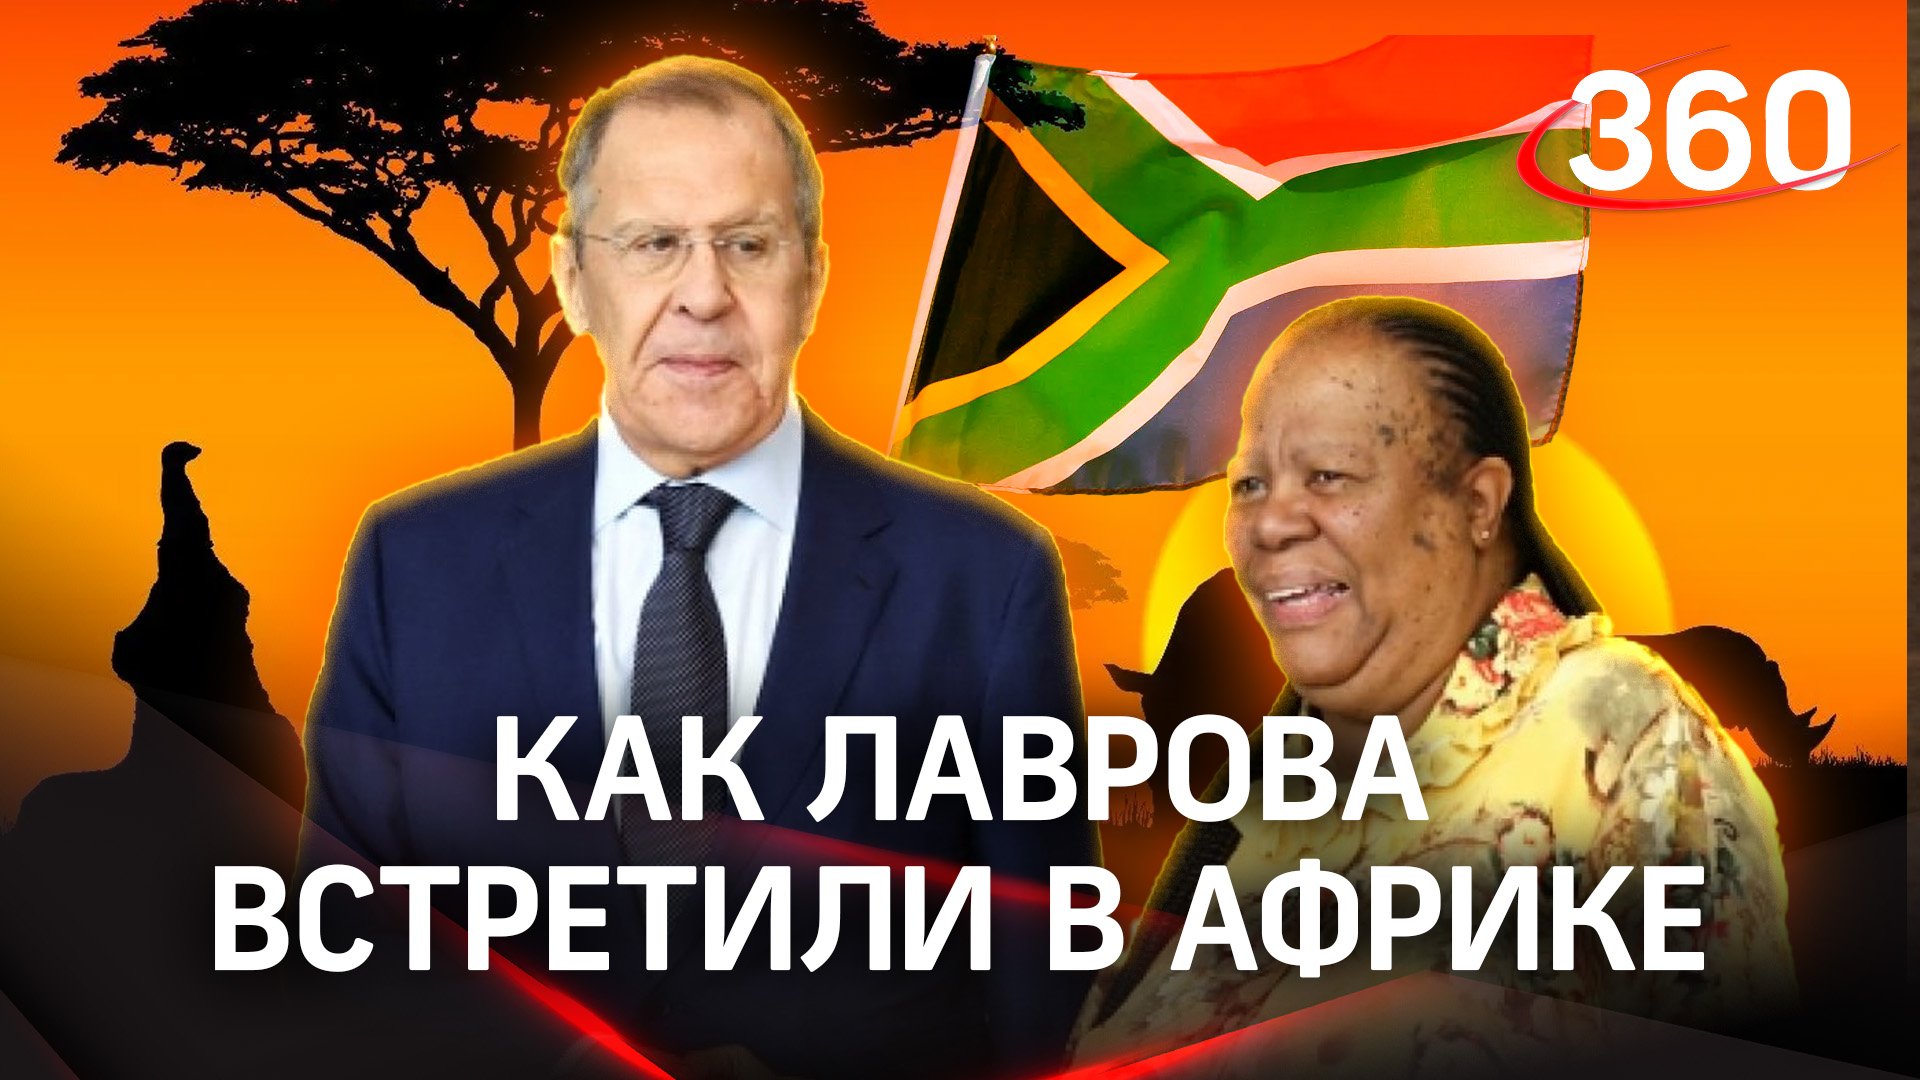 Вдоль по Африке: Лавров прибыл в Эсватини из ЮАР. Как российского министра встретили на континенте